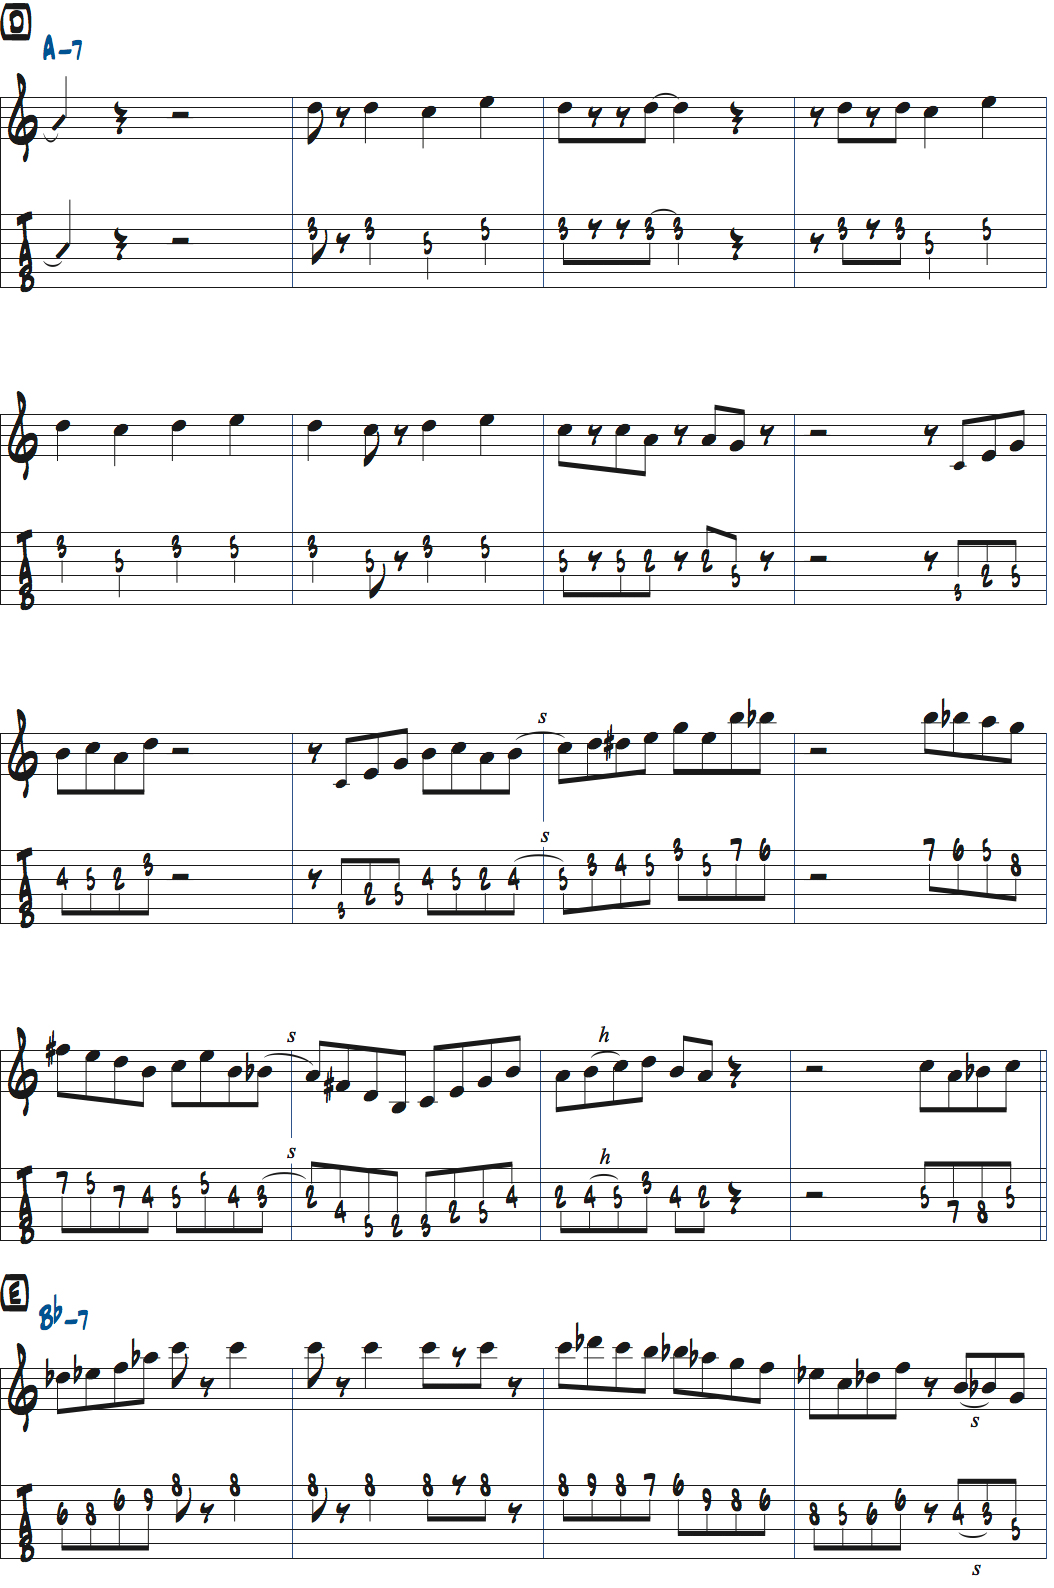 パット・マルティーノimpressionsのアドリブ1コーラス目楽譜ページ1